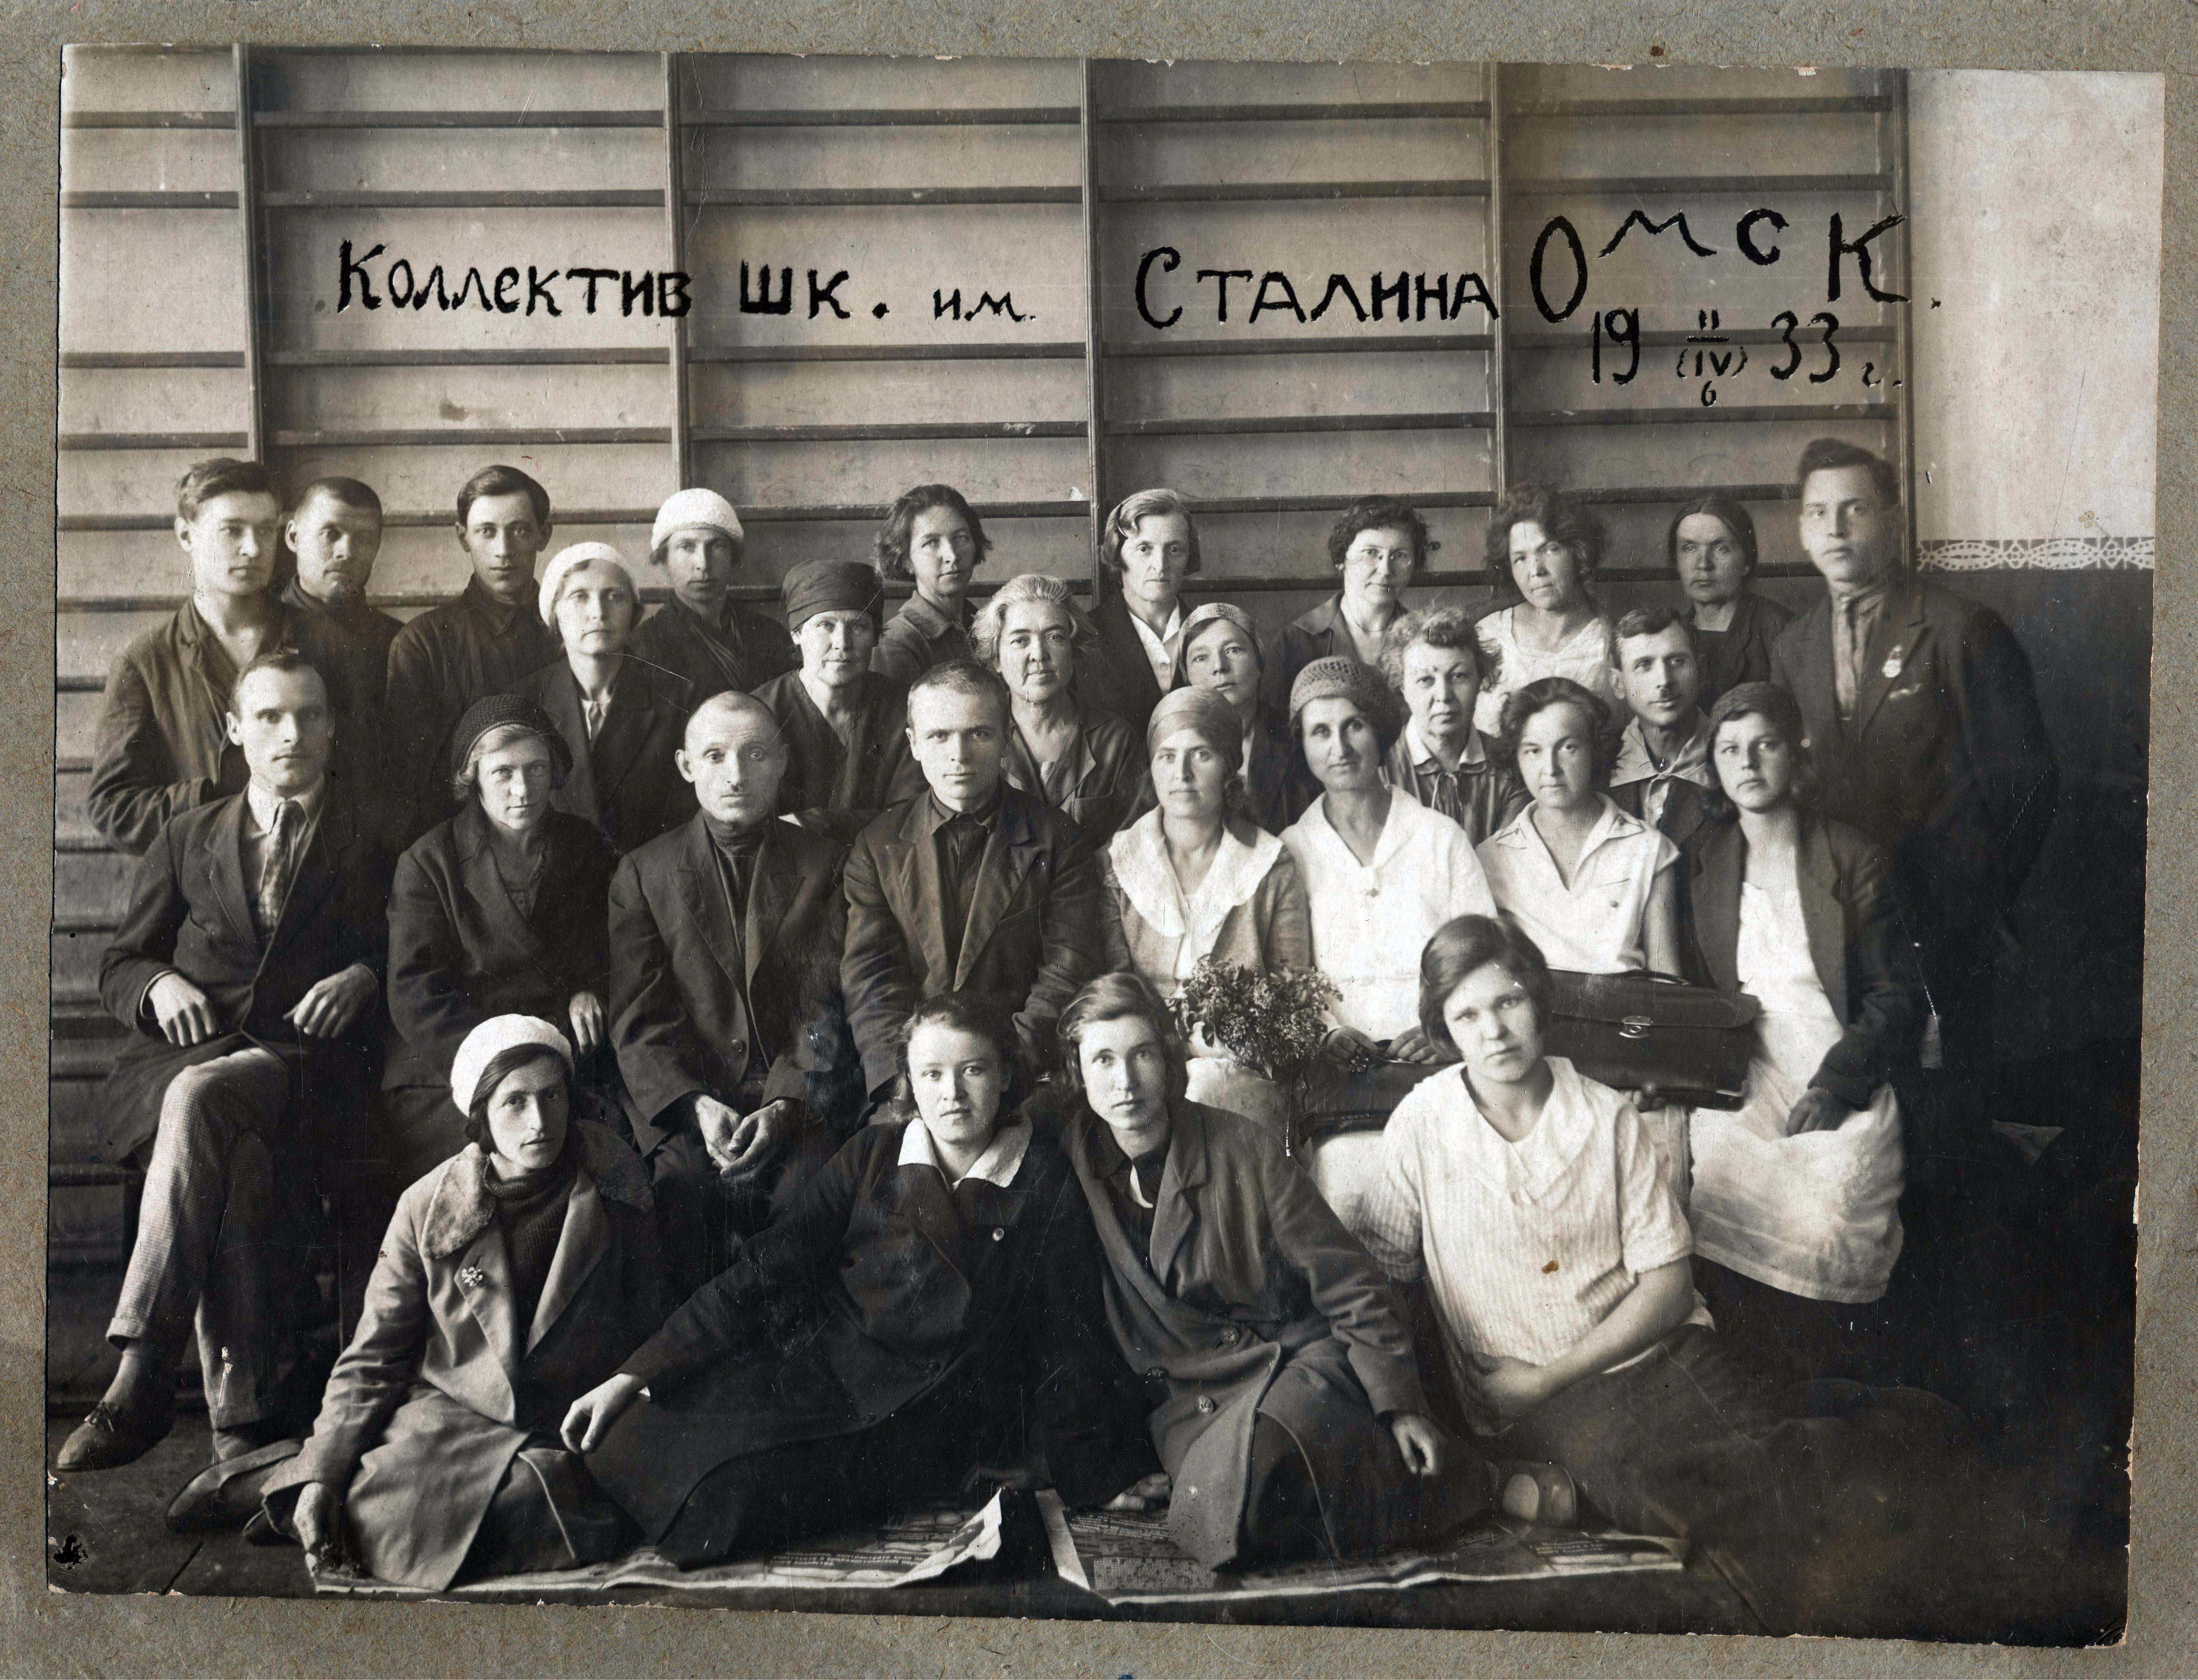 Коллектив школы им.Сталина Омск 1933г. Зоя Ильинична Маркова во втором ряду вторая слева